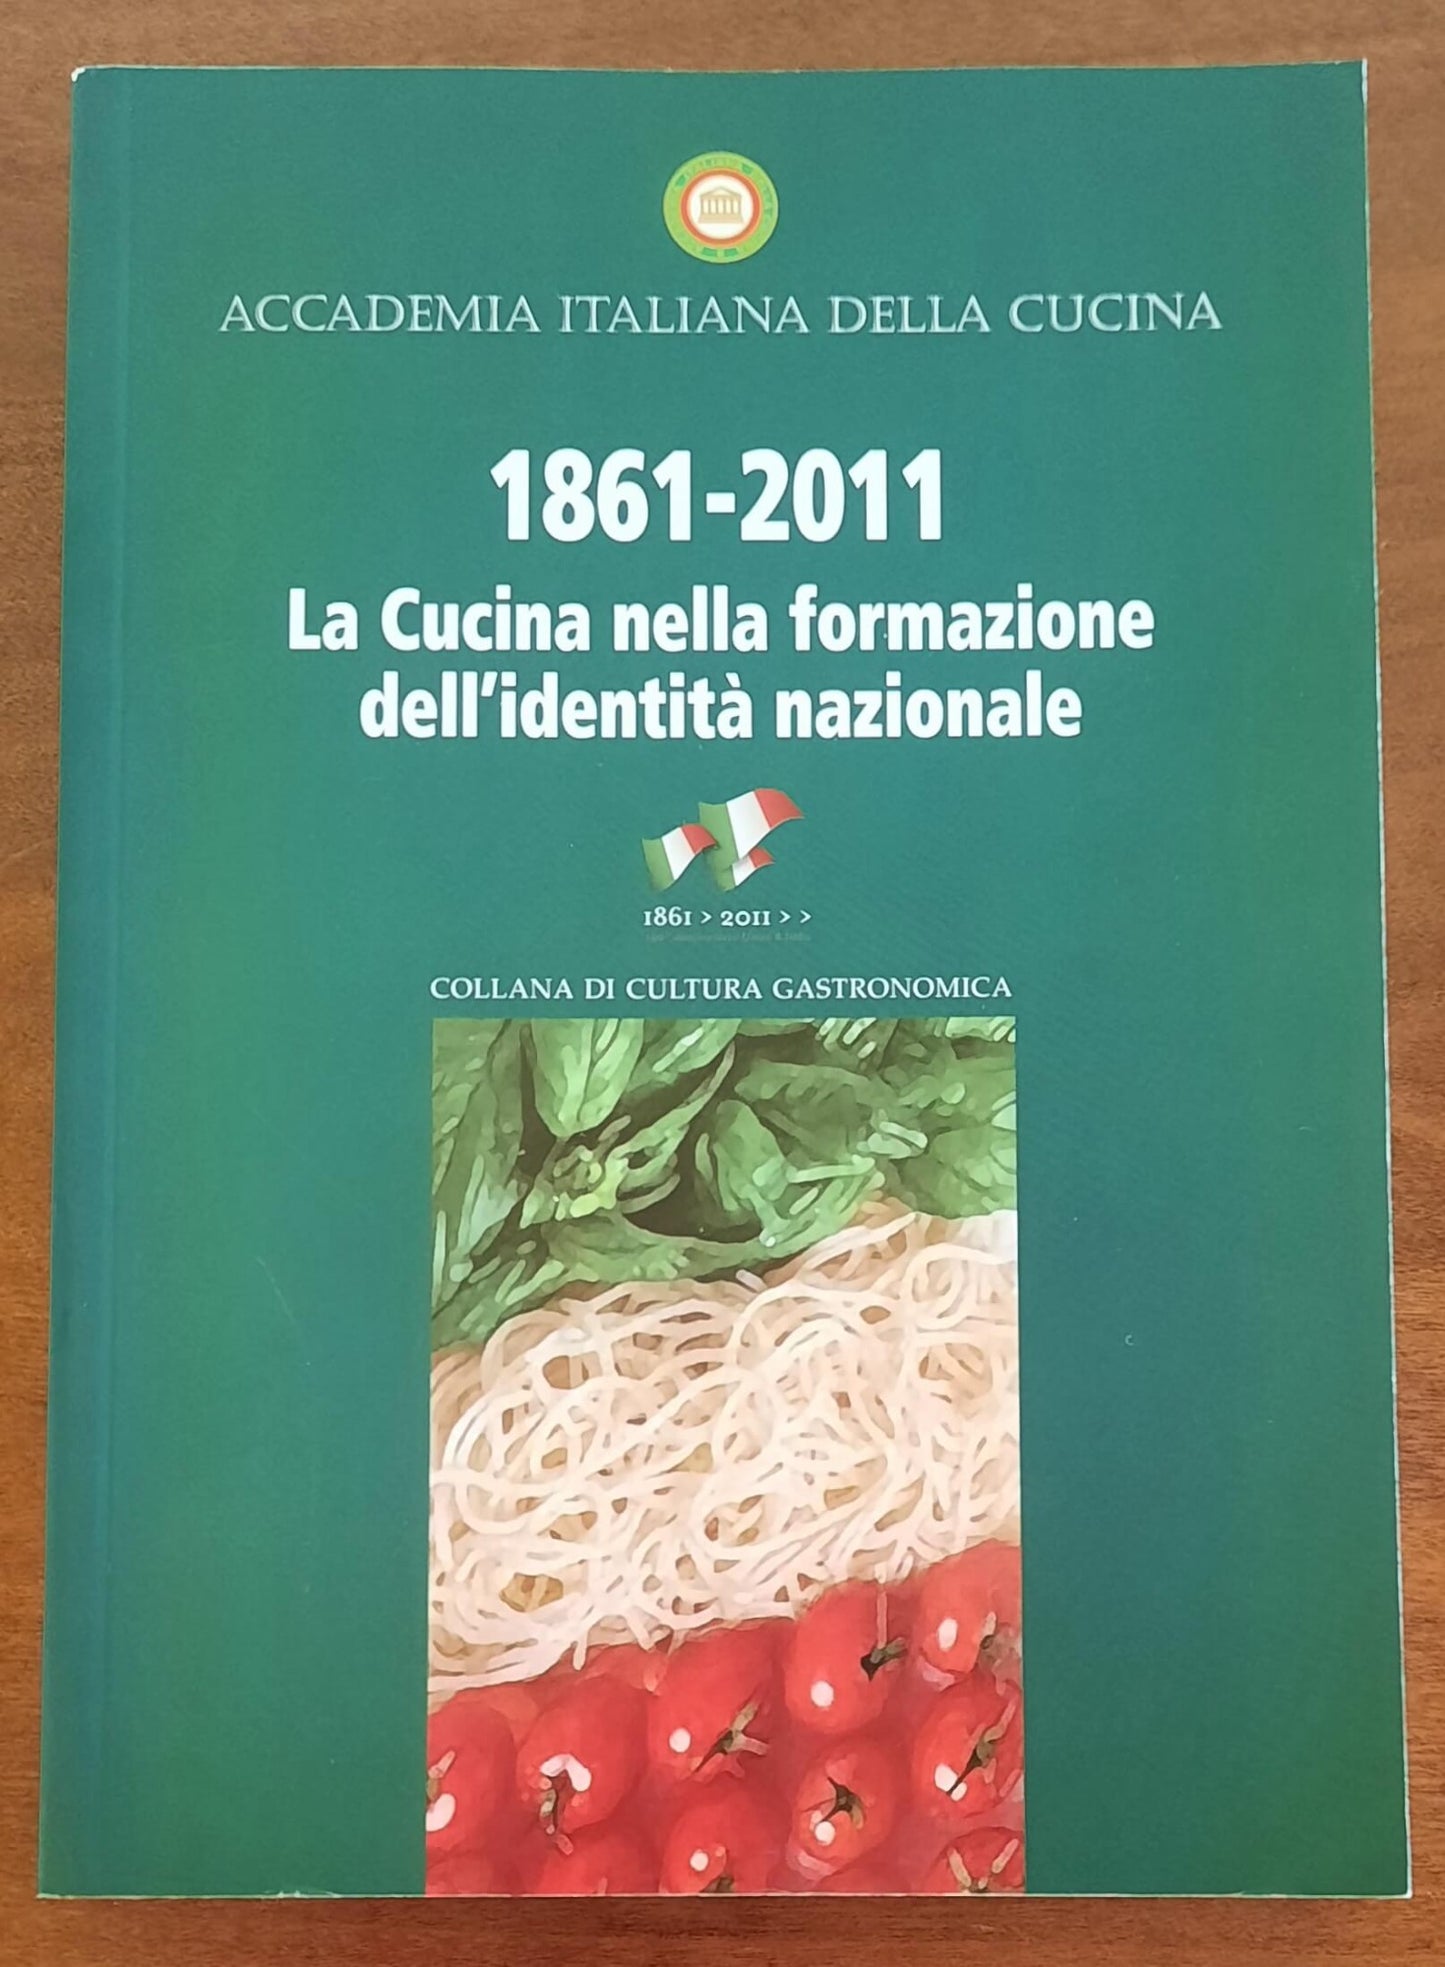 1861 - 2011. La Cucina nella formazione dell’identità nazionale